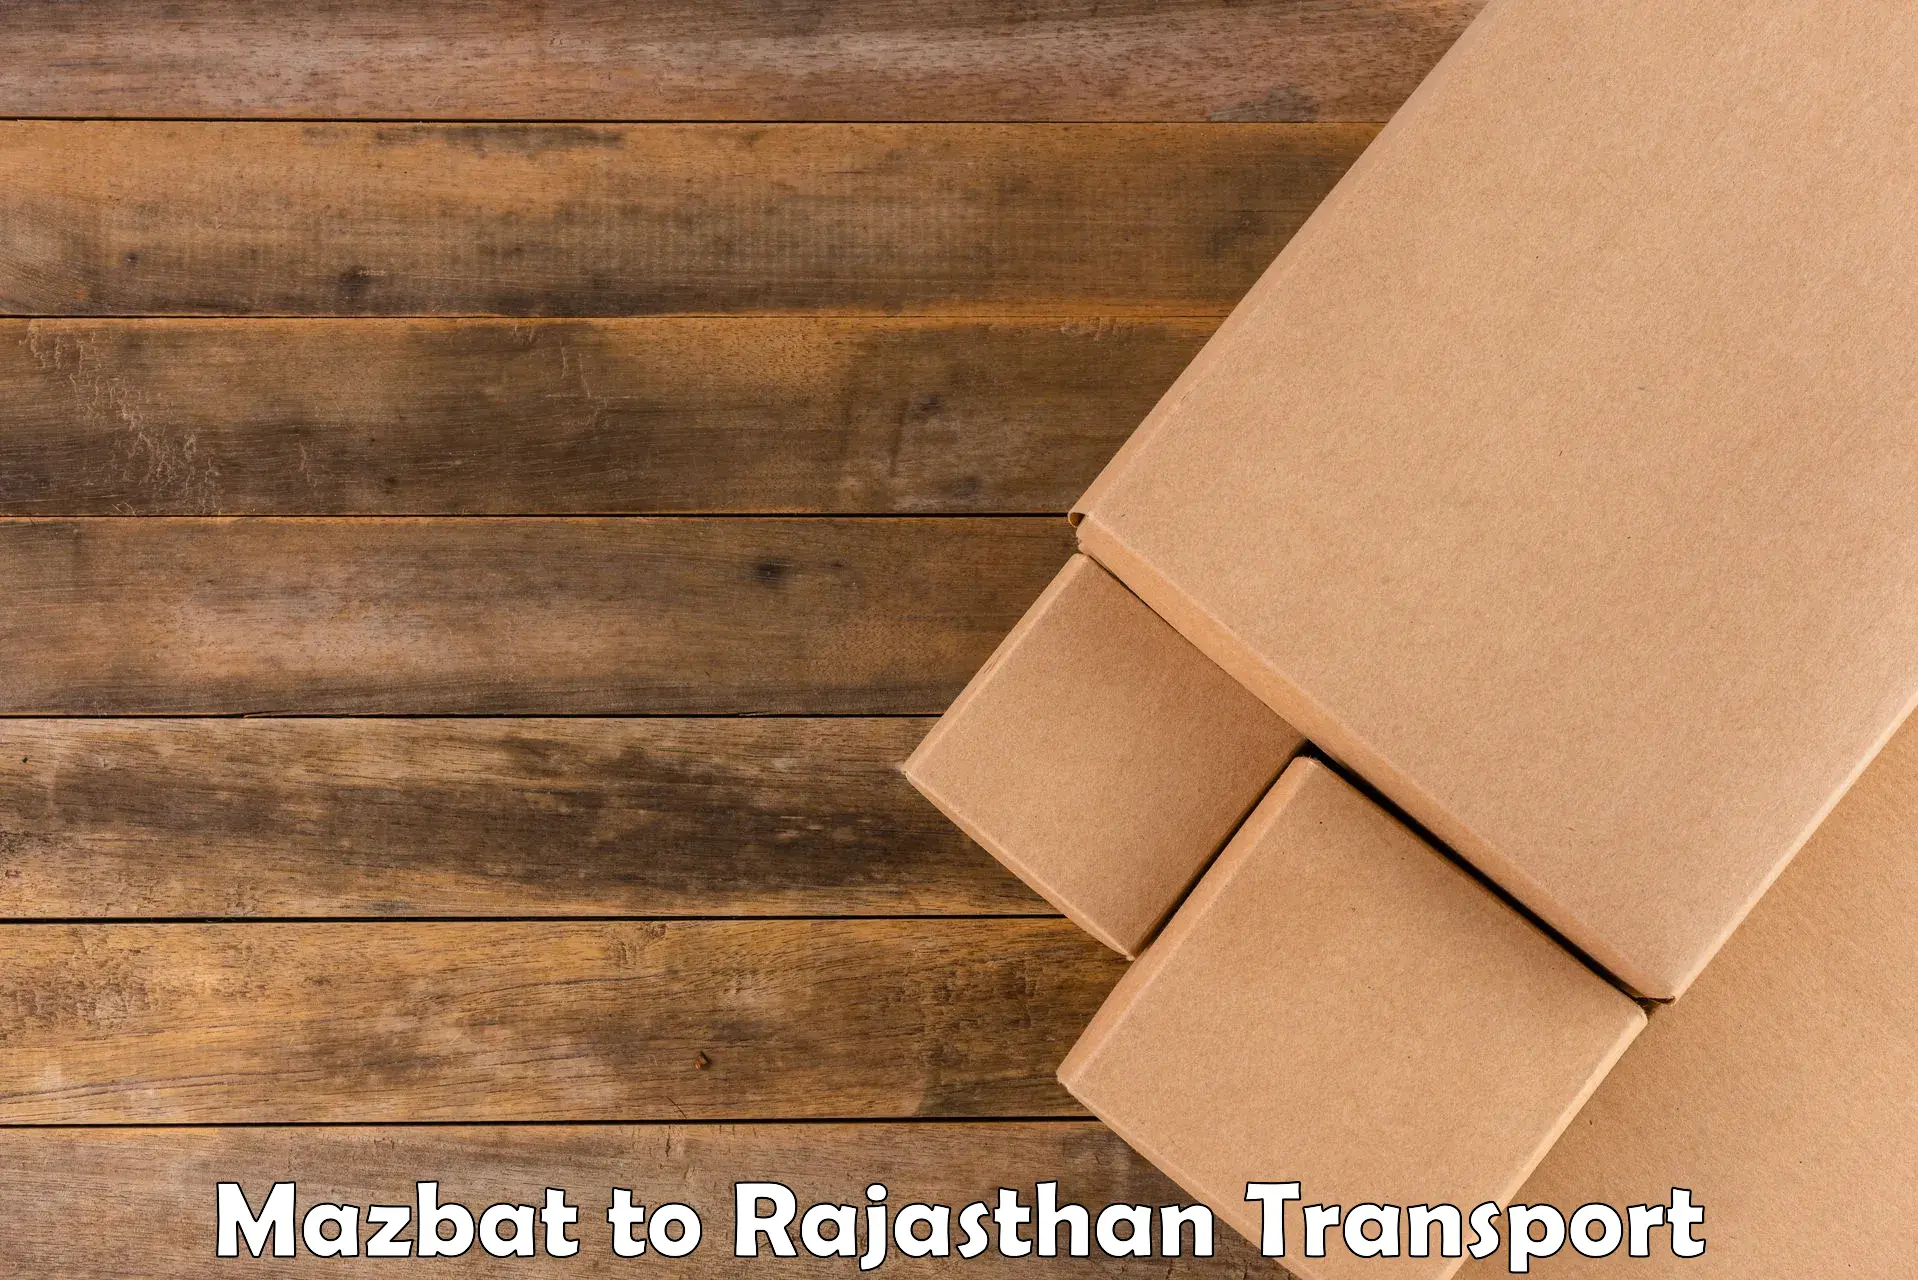 Online transport service Mazbat to Karauli